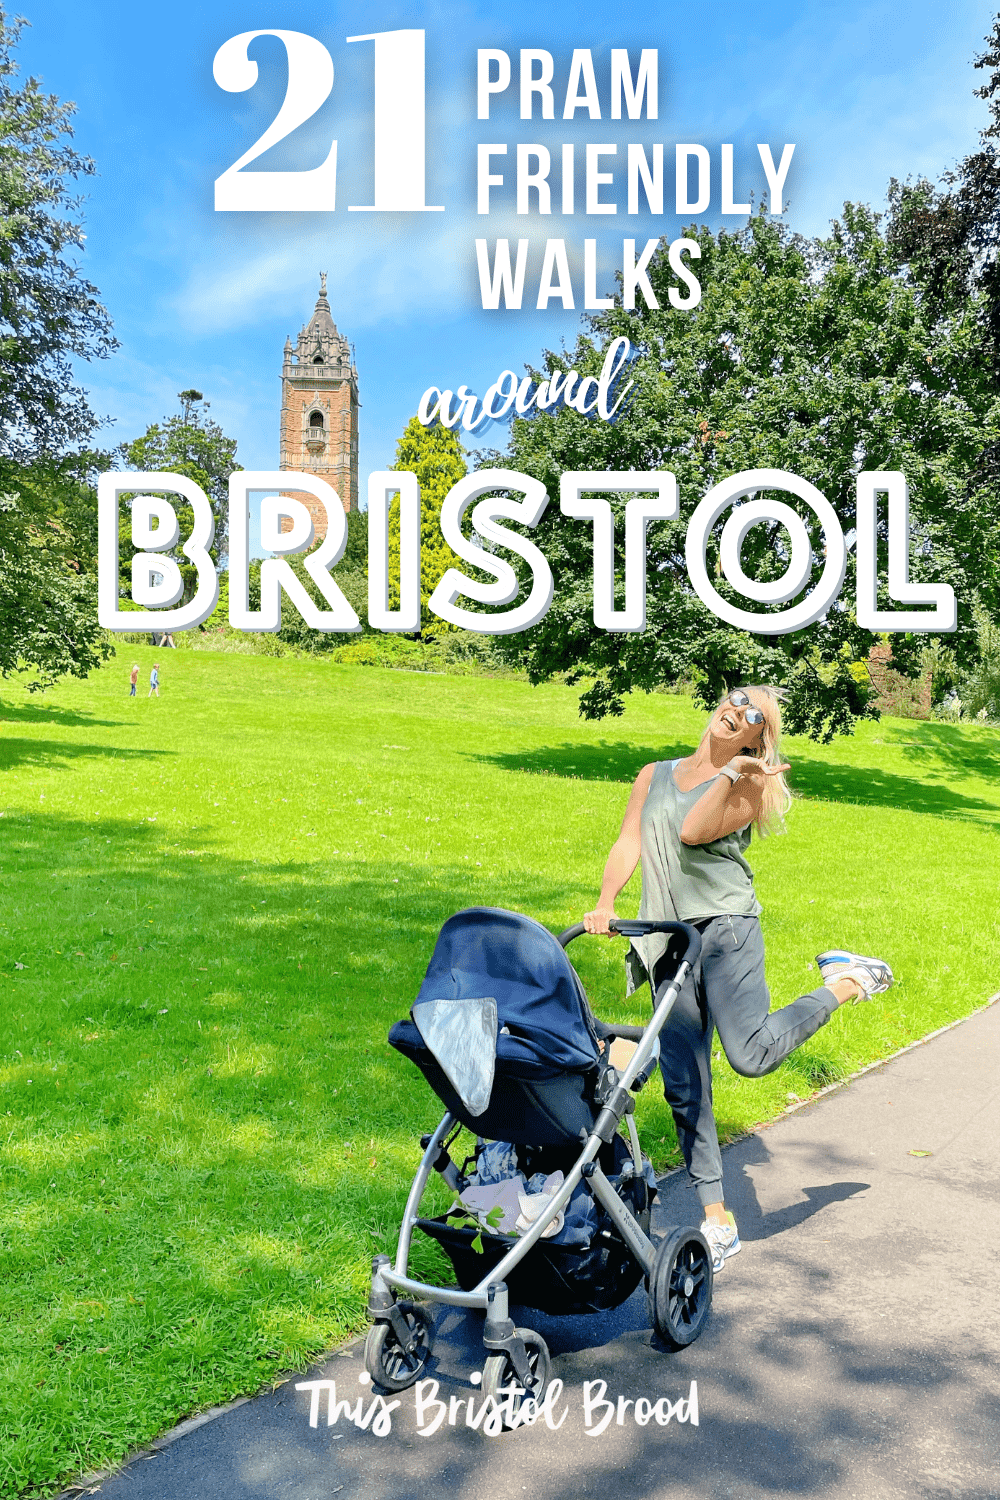 pram friendly walks around Bristol